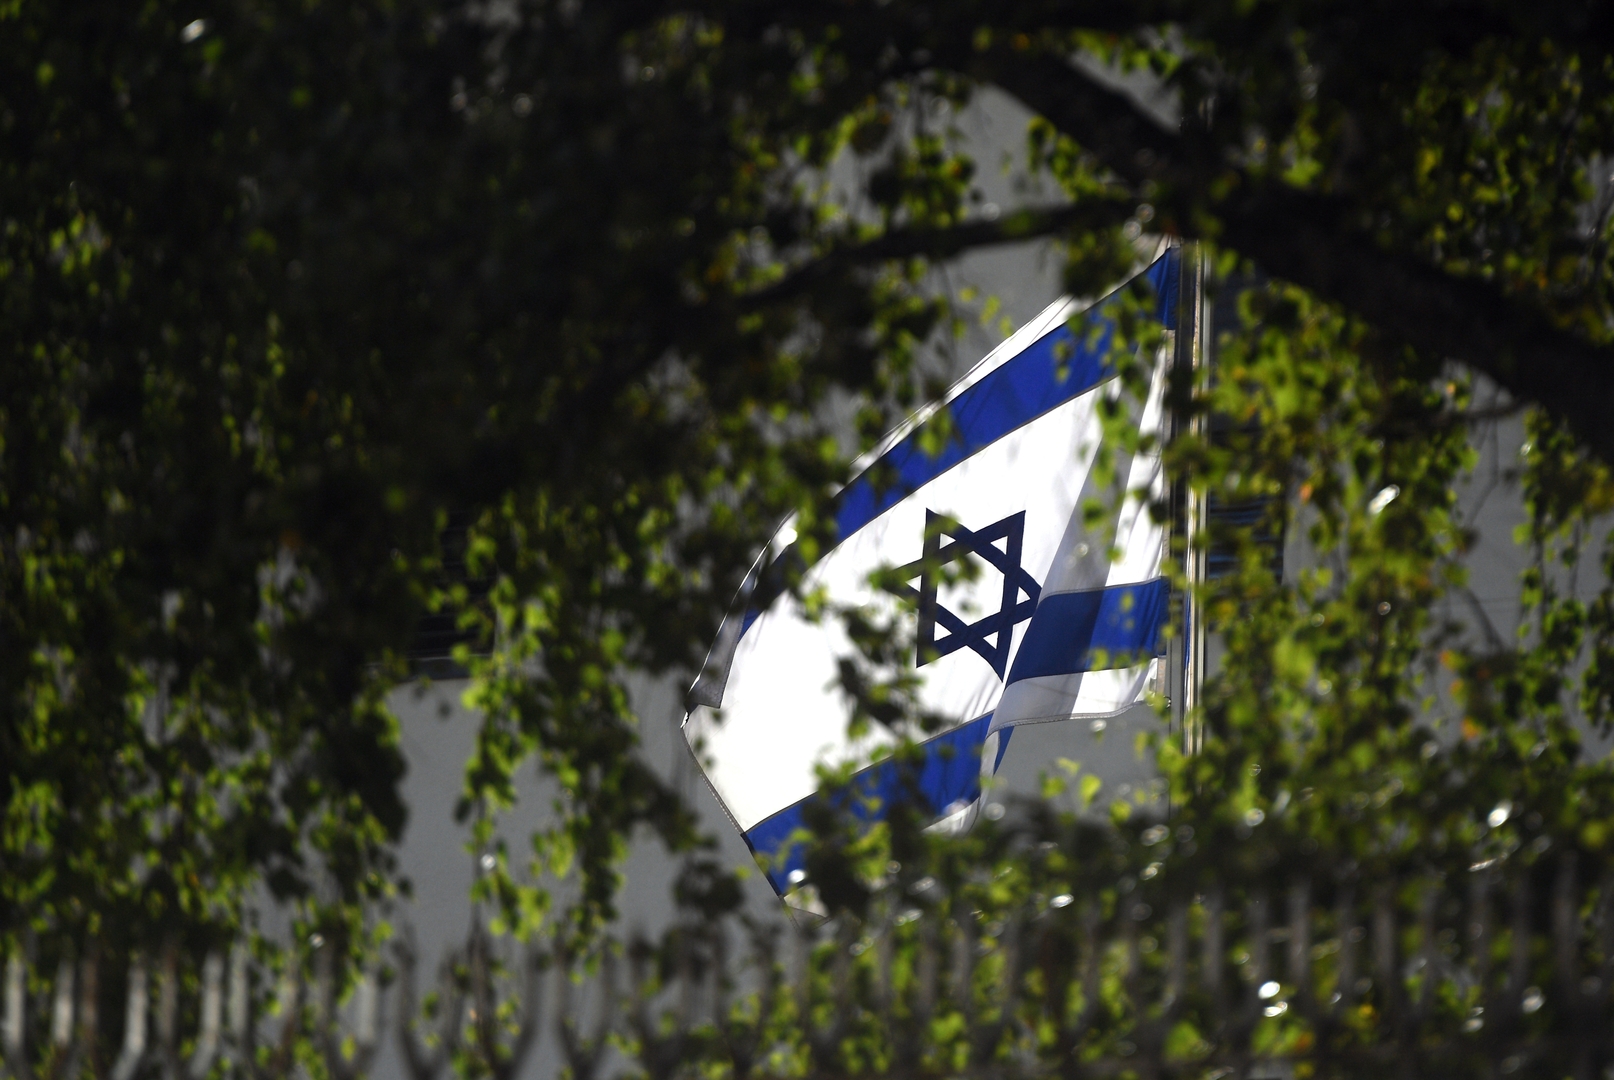 رئيس الوزراء الإسرائيلي: تصريحات لافروف بشأن أصول هتلر اليهودية في غاية الخطورة